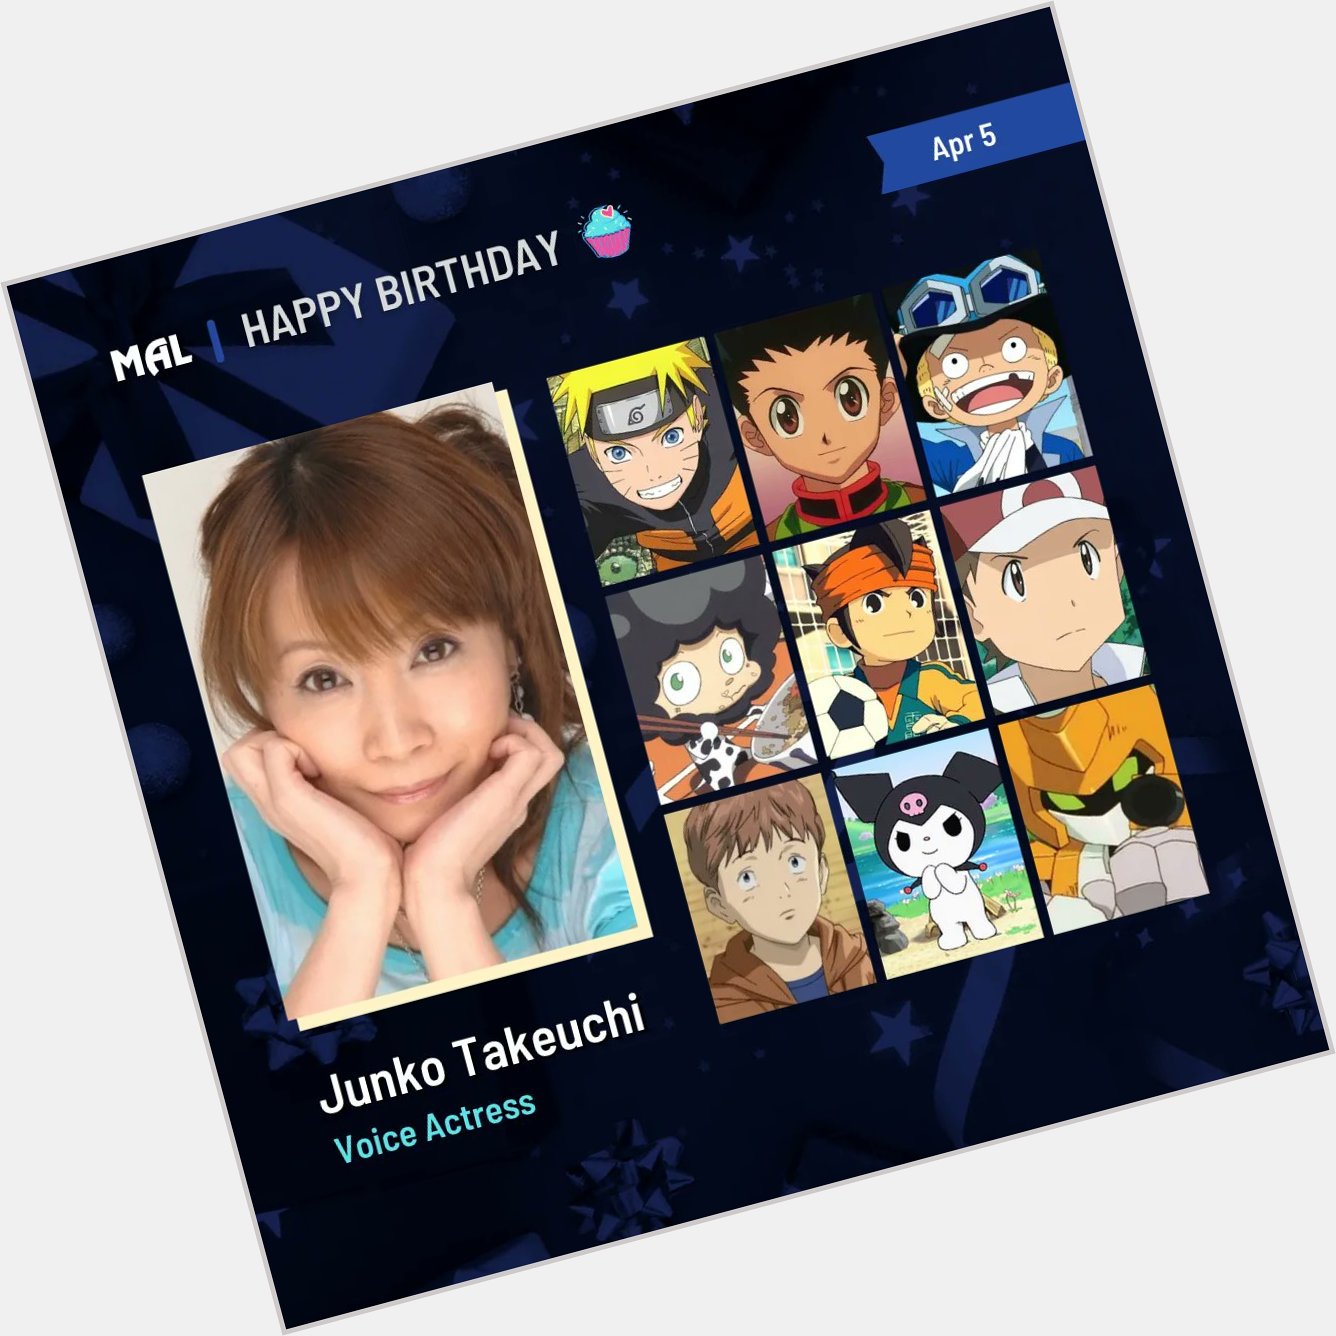 Happy Birthday to Junko Takeuchi! Full profile:  